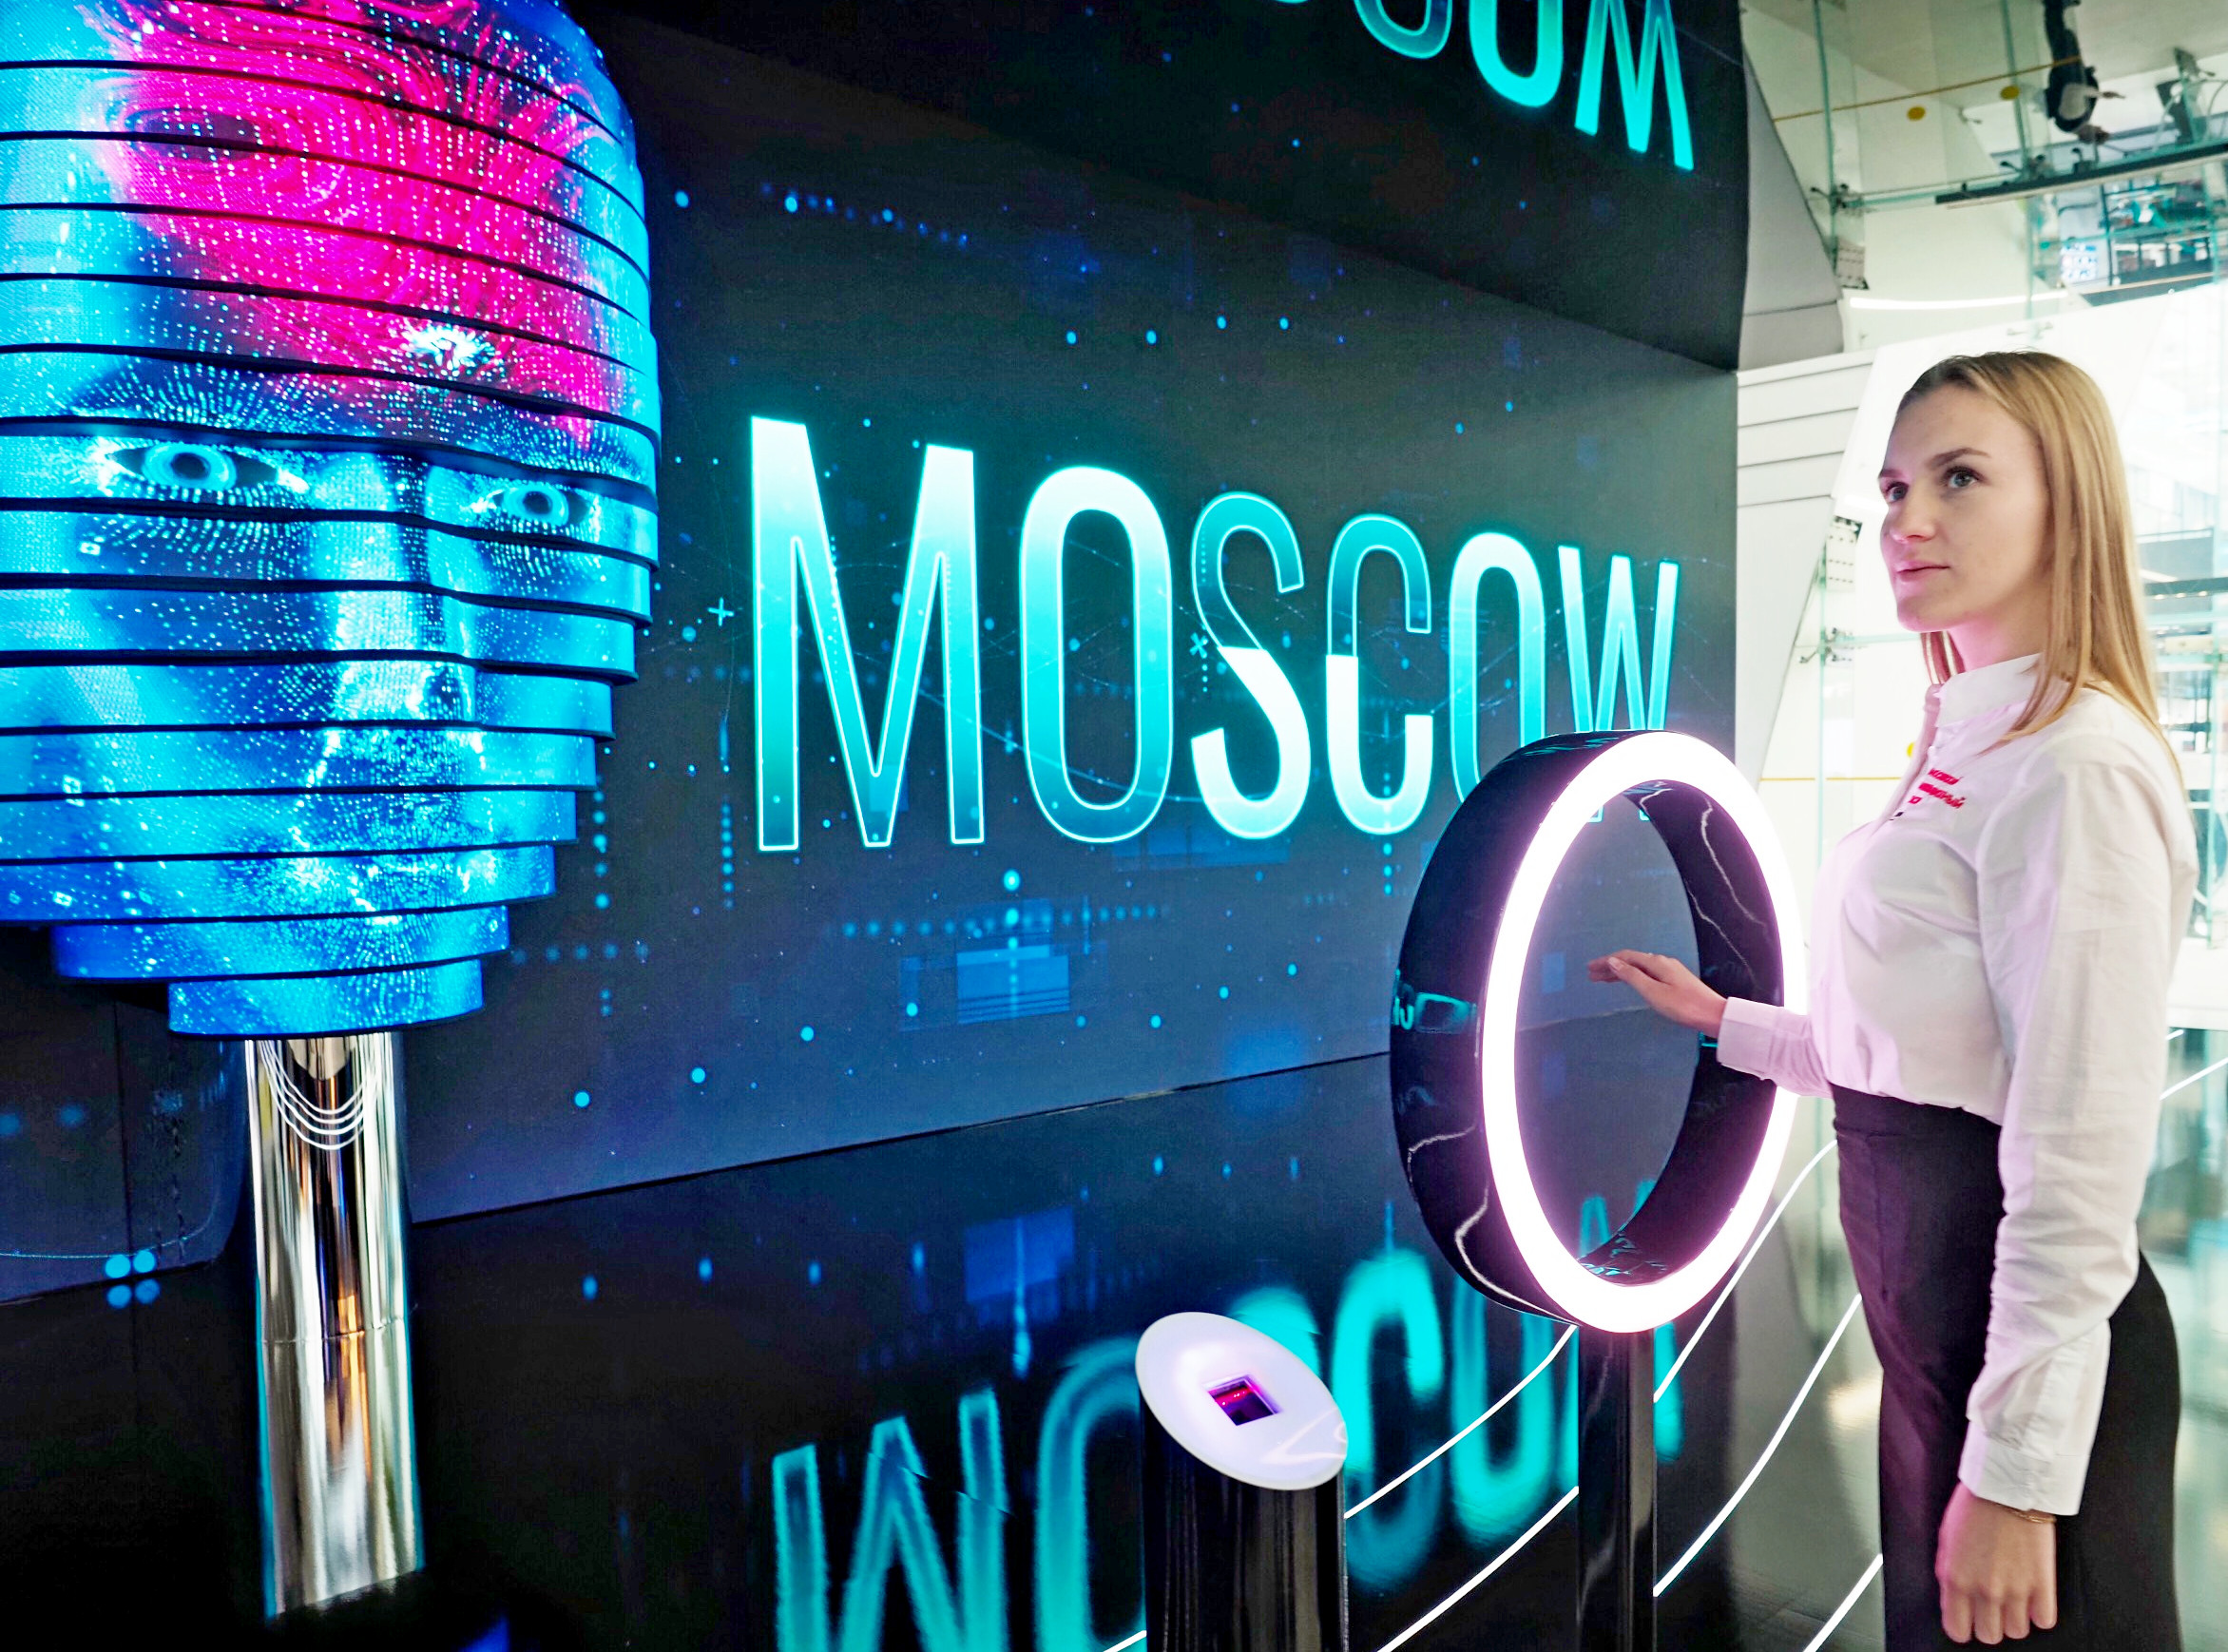 Экспозиция «Город будущего» покажет, какой станет Москва в 2030 году